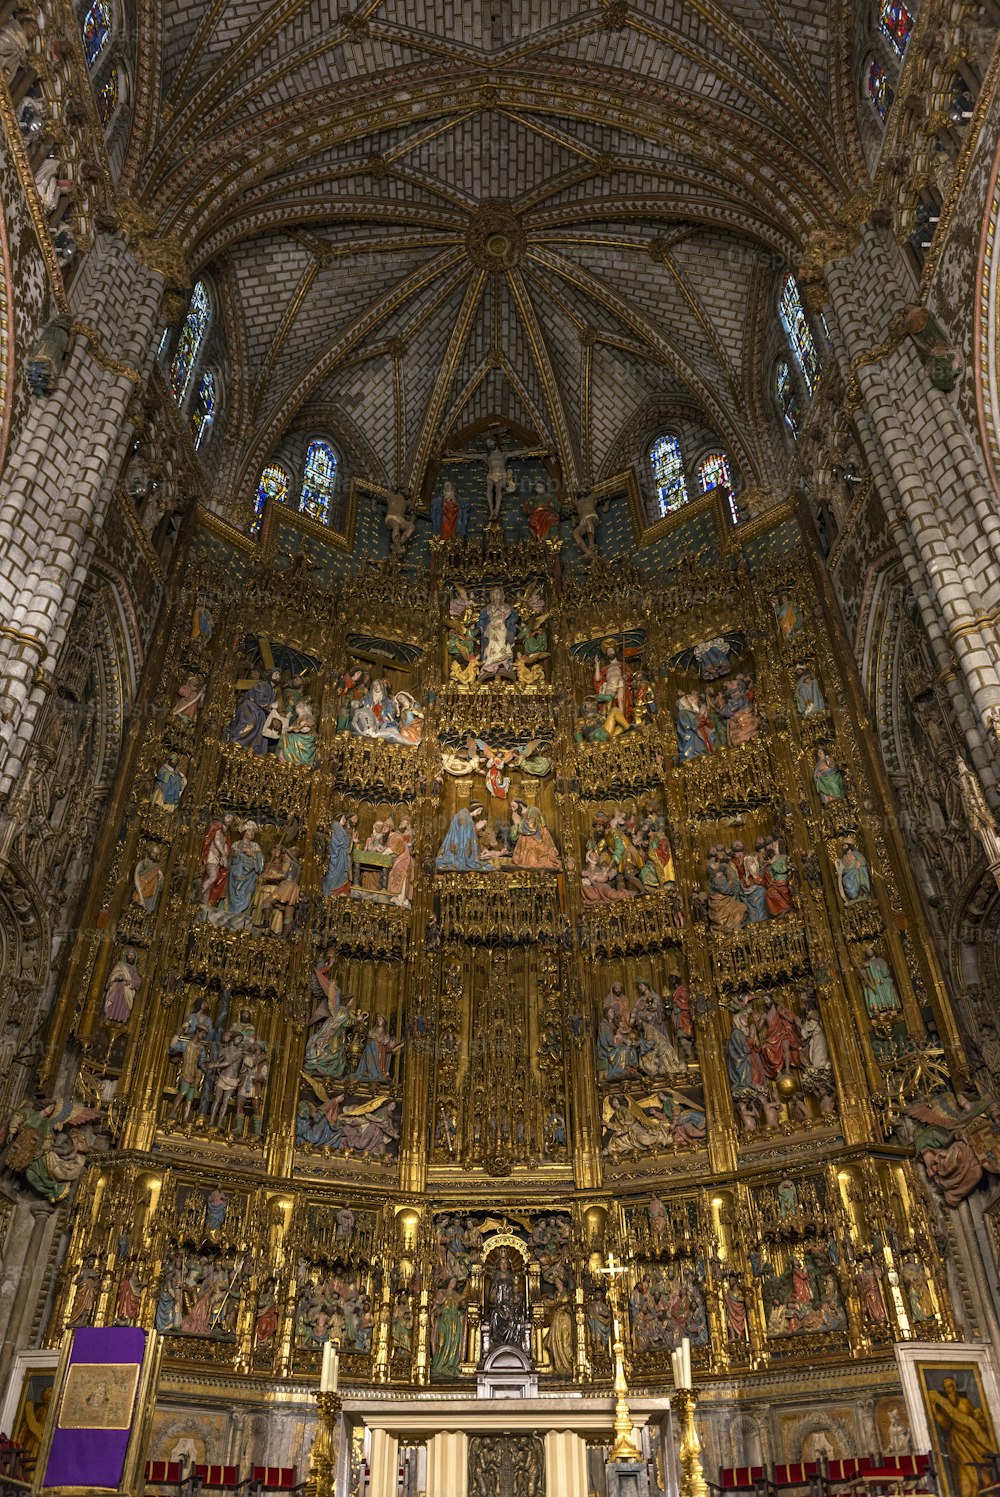 Vista interior del retablo y Altar Mayor de la Catedral de Toledo (Catedral Primada de Santa María de Toledo), un retablo gótico muy florido y uno de los últimos ejemplos de este estilo artístico. La catedral de Toledo es una de las tres catedrales del alto gótico del siglo XIII en España y está considerada como la obra maestra del estilo gótico en España.